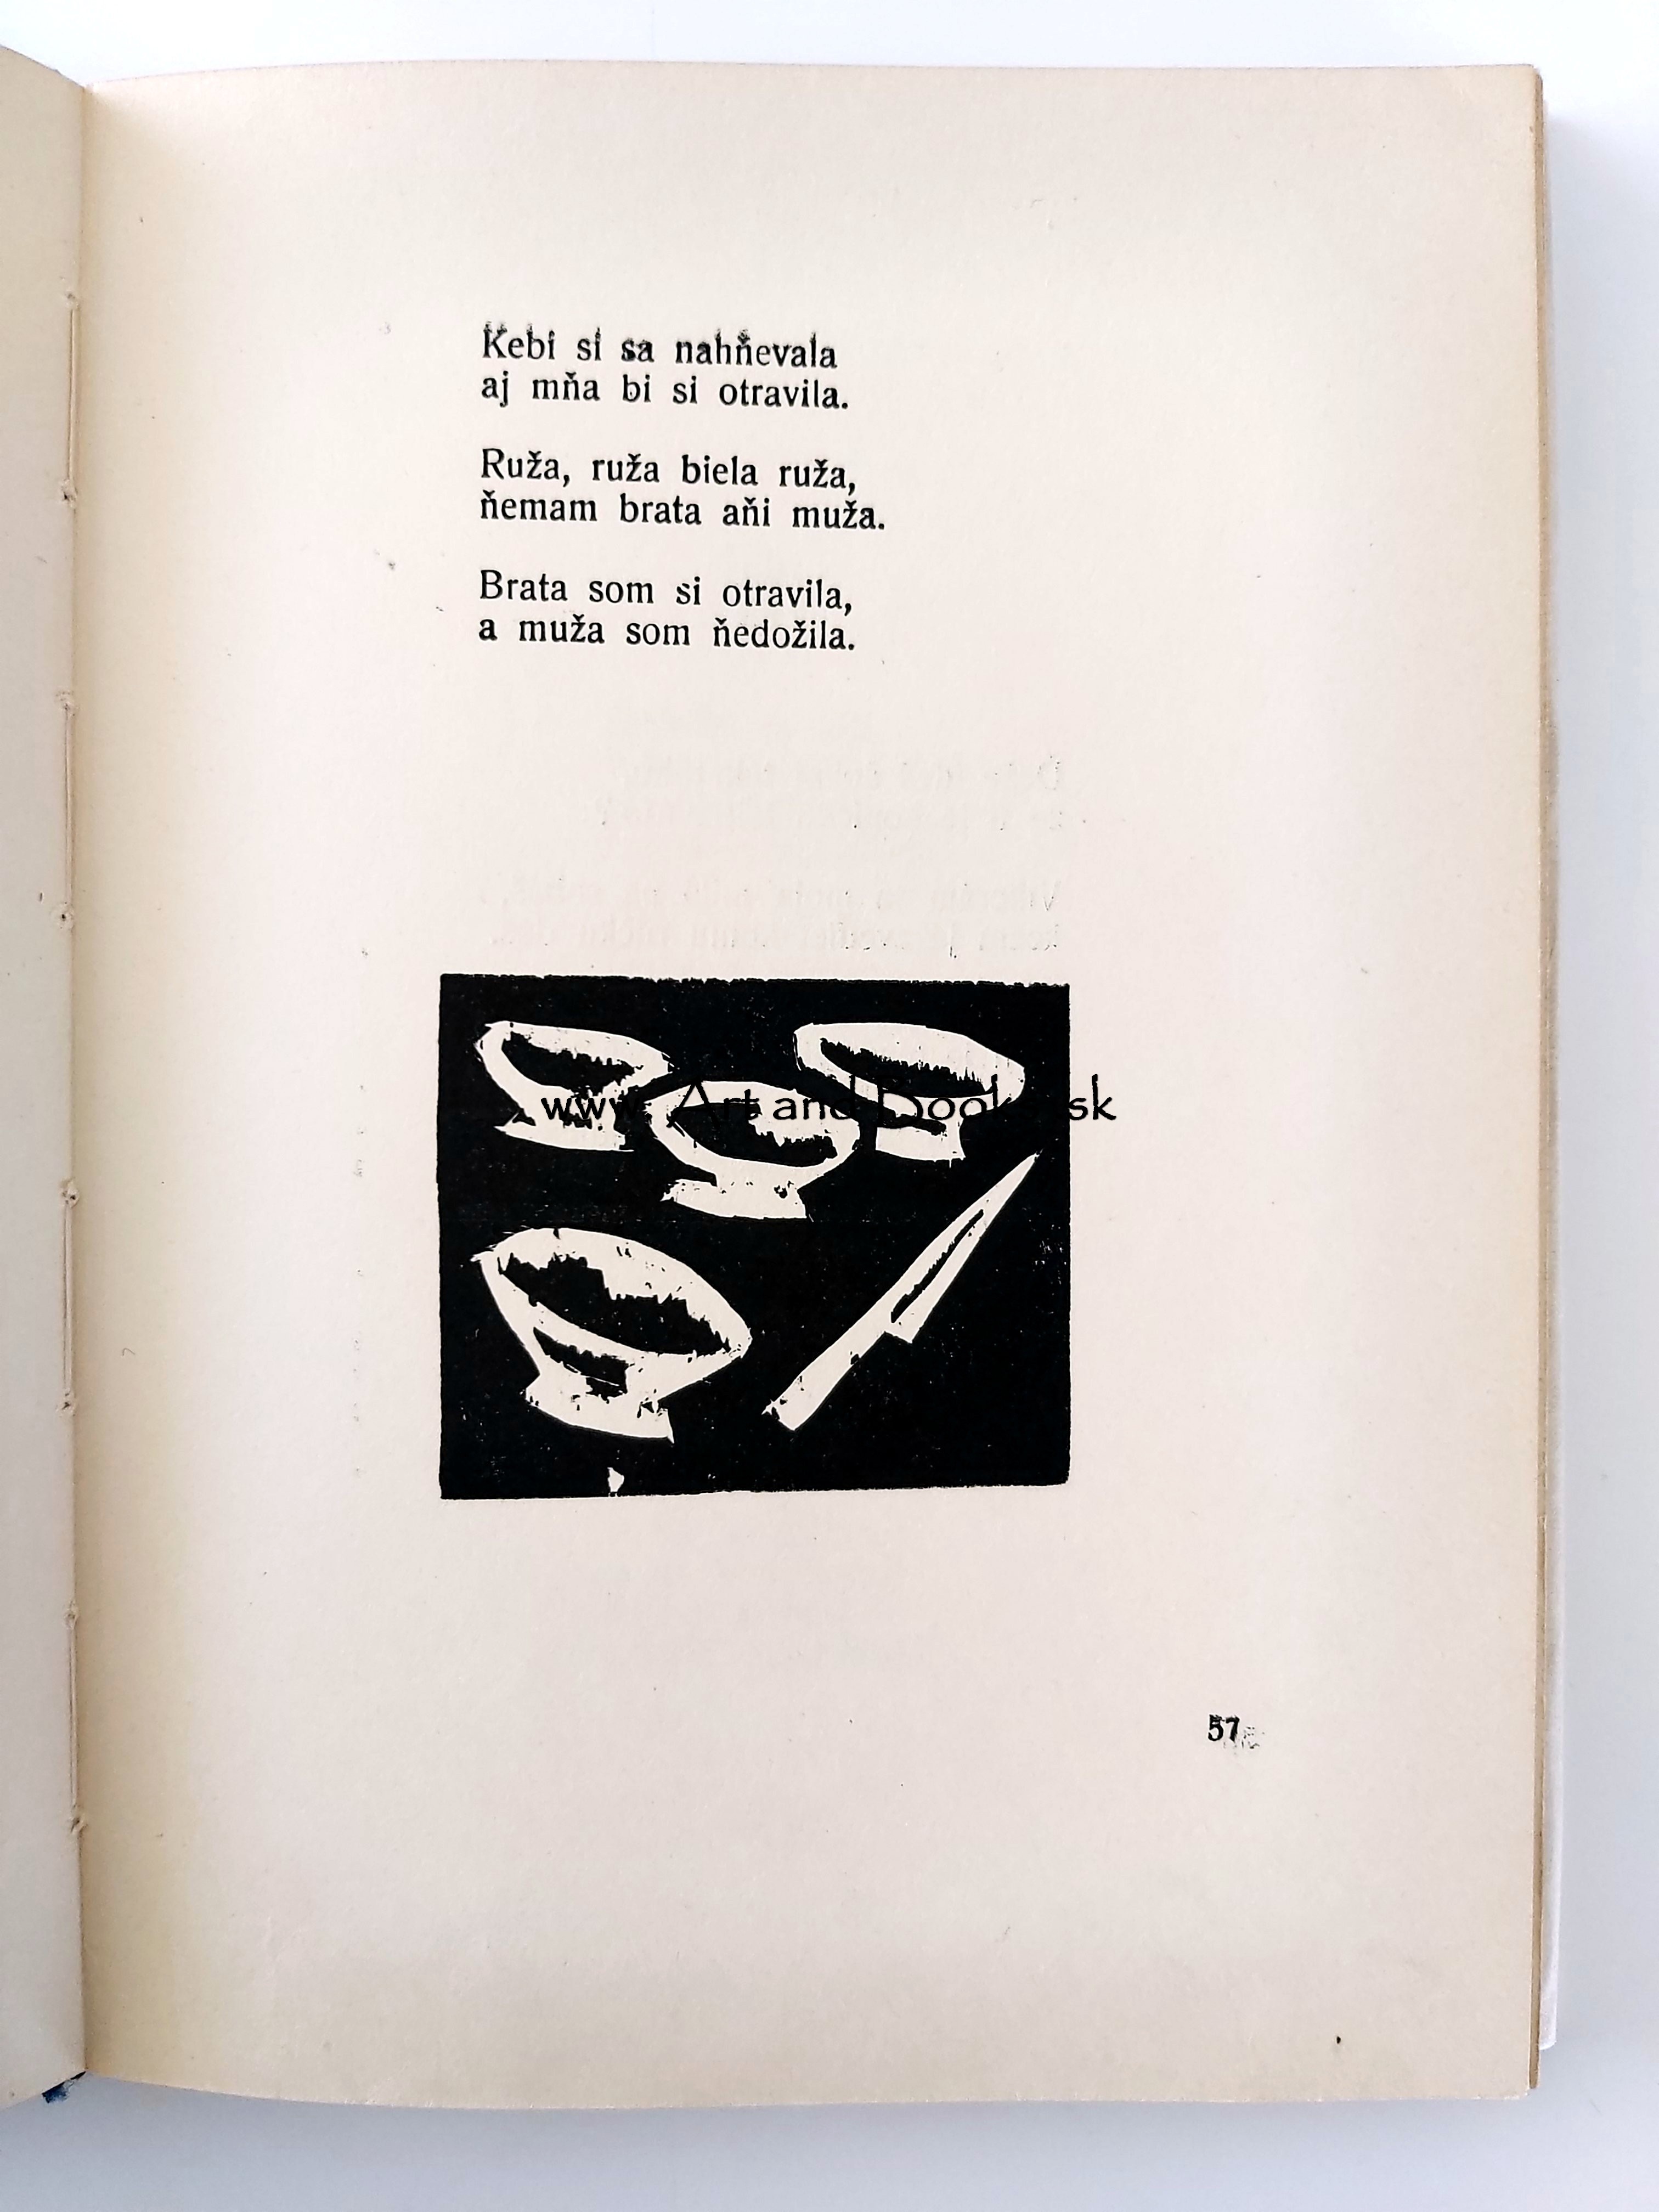 Mária Kolečány - Slovenské ľudové balady (1948) (sold/predané) ● 142334